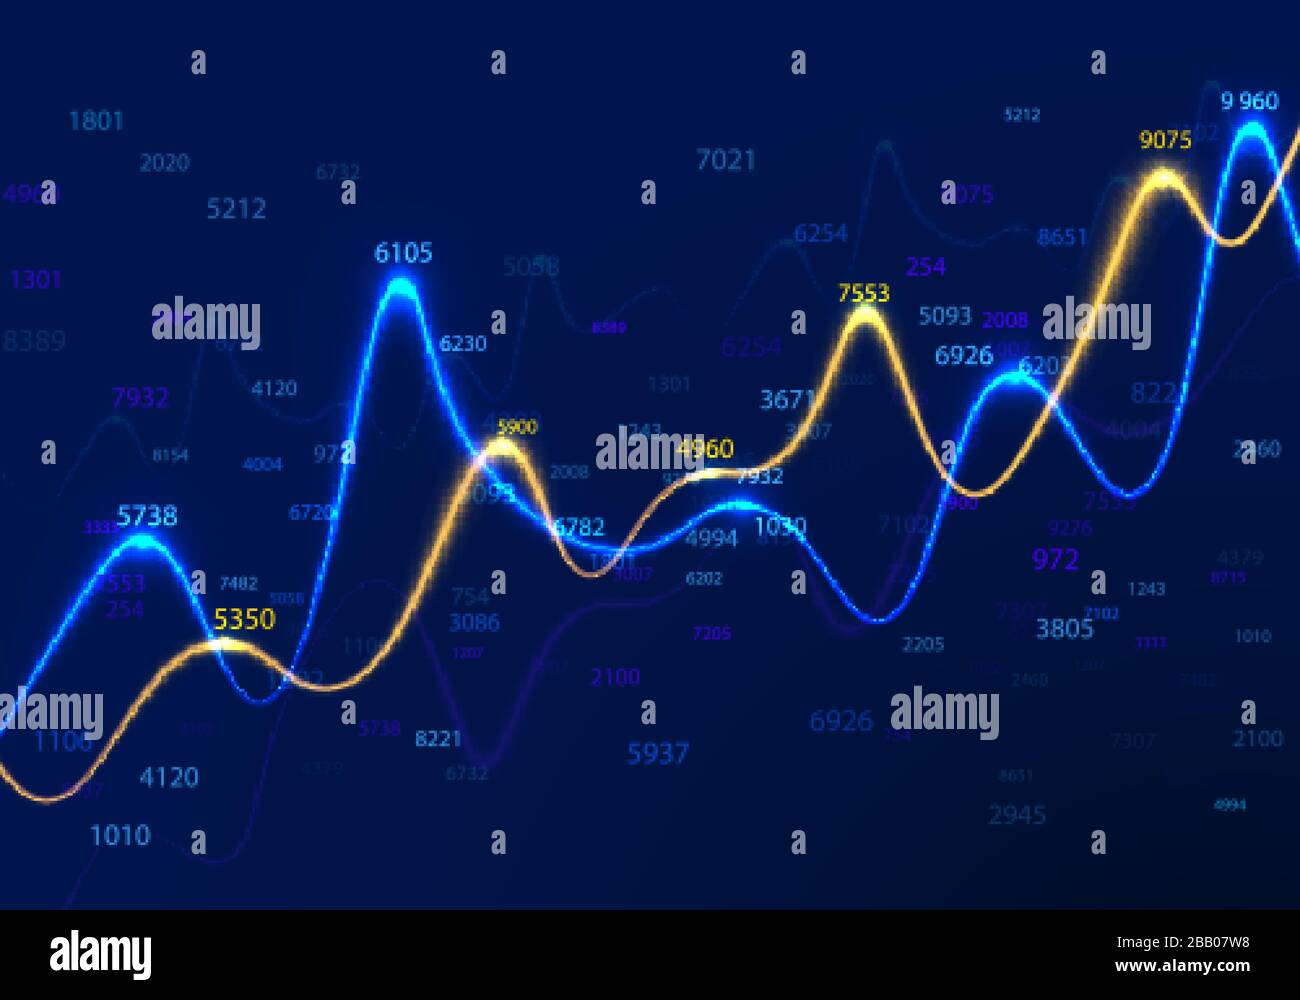 Diagrammes d'affaires et graphiques sur fond bleu avec nombres aléatoires. Statistiques de données et recherche commerciale. Rapport financier et diagrammes économiques. INF Illustration de Vecteur